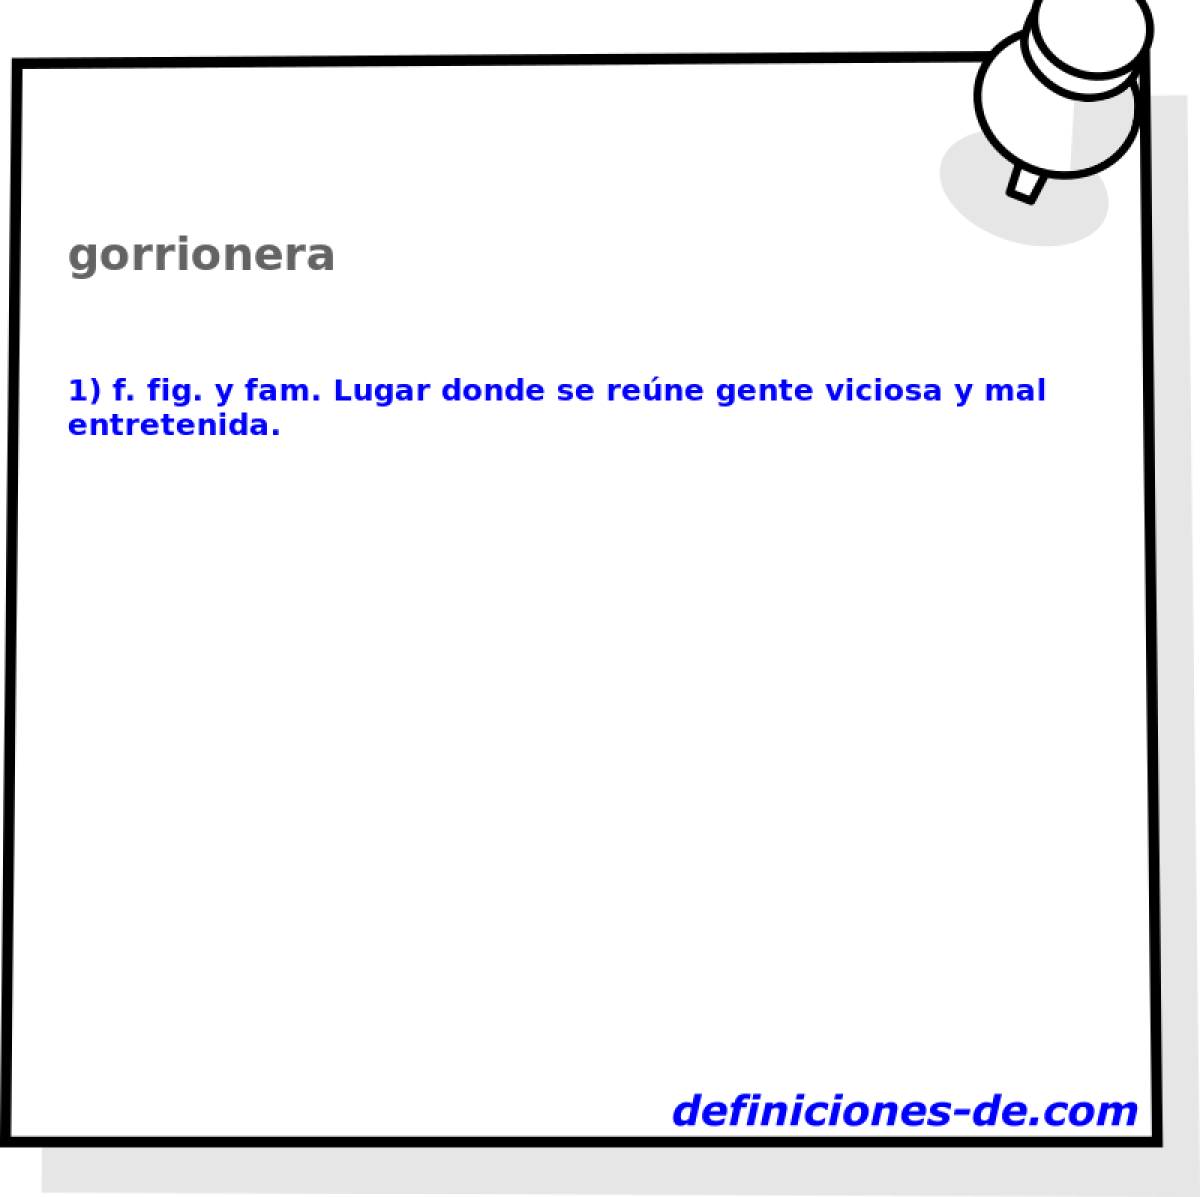 gorrionera 